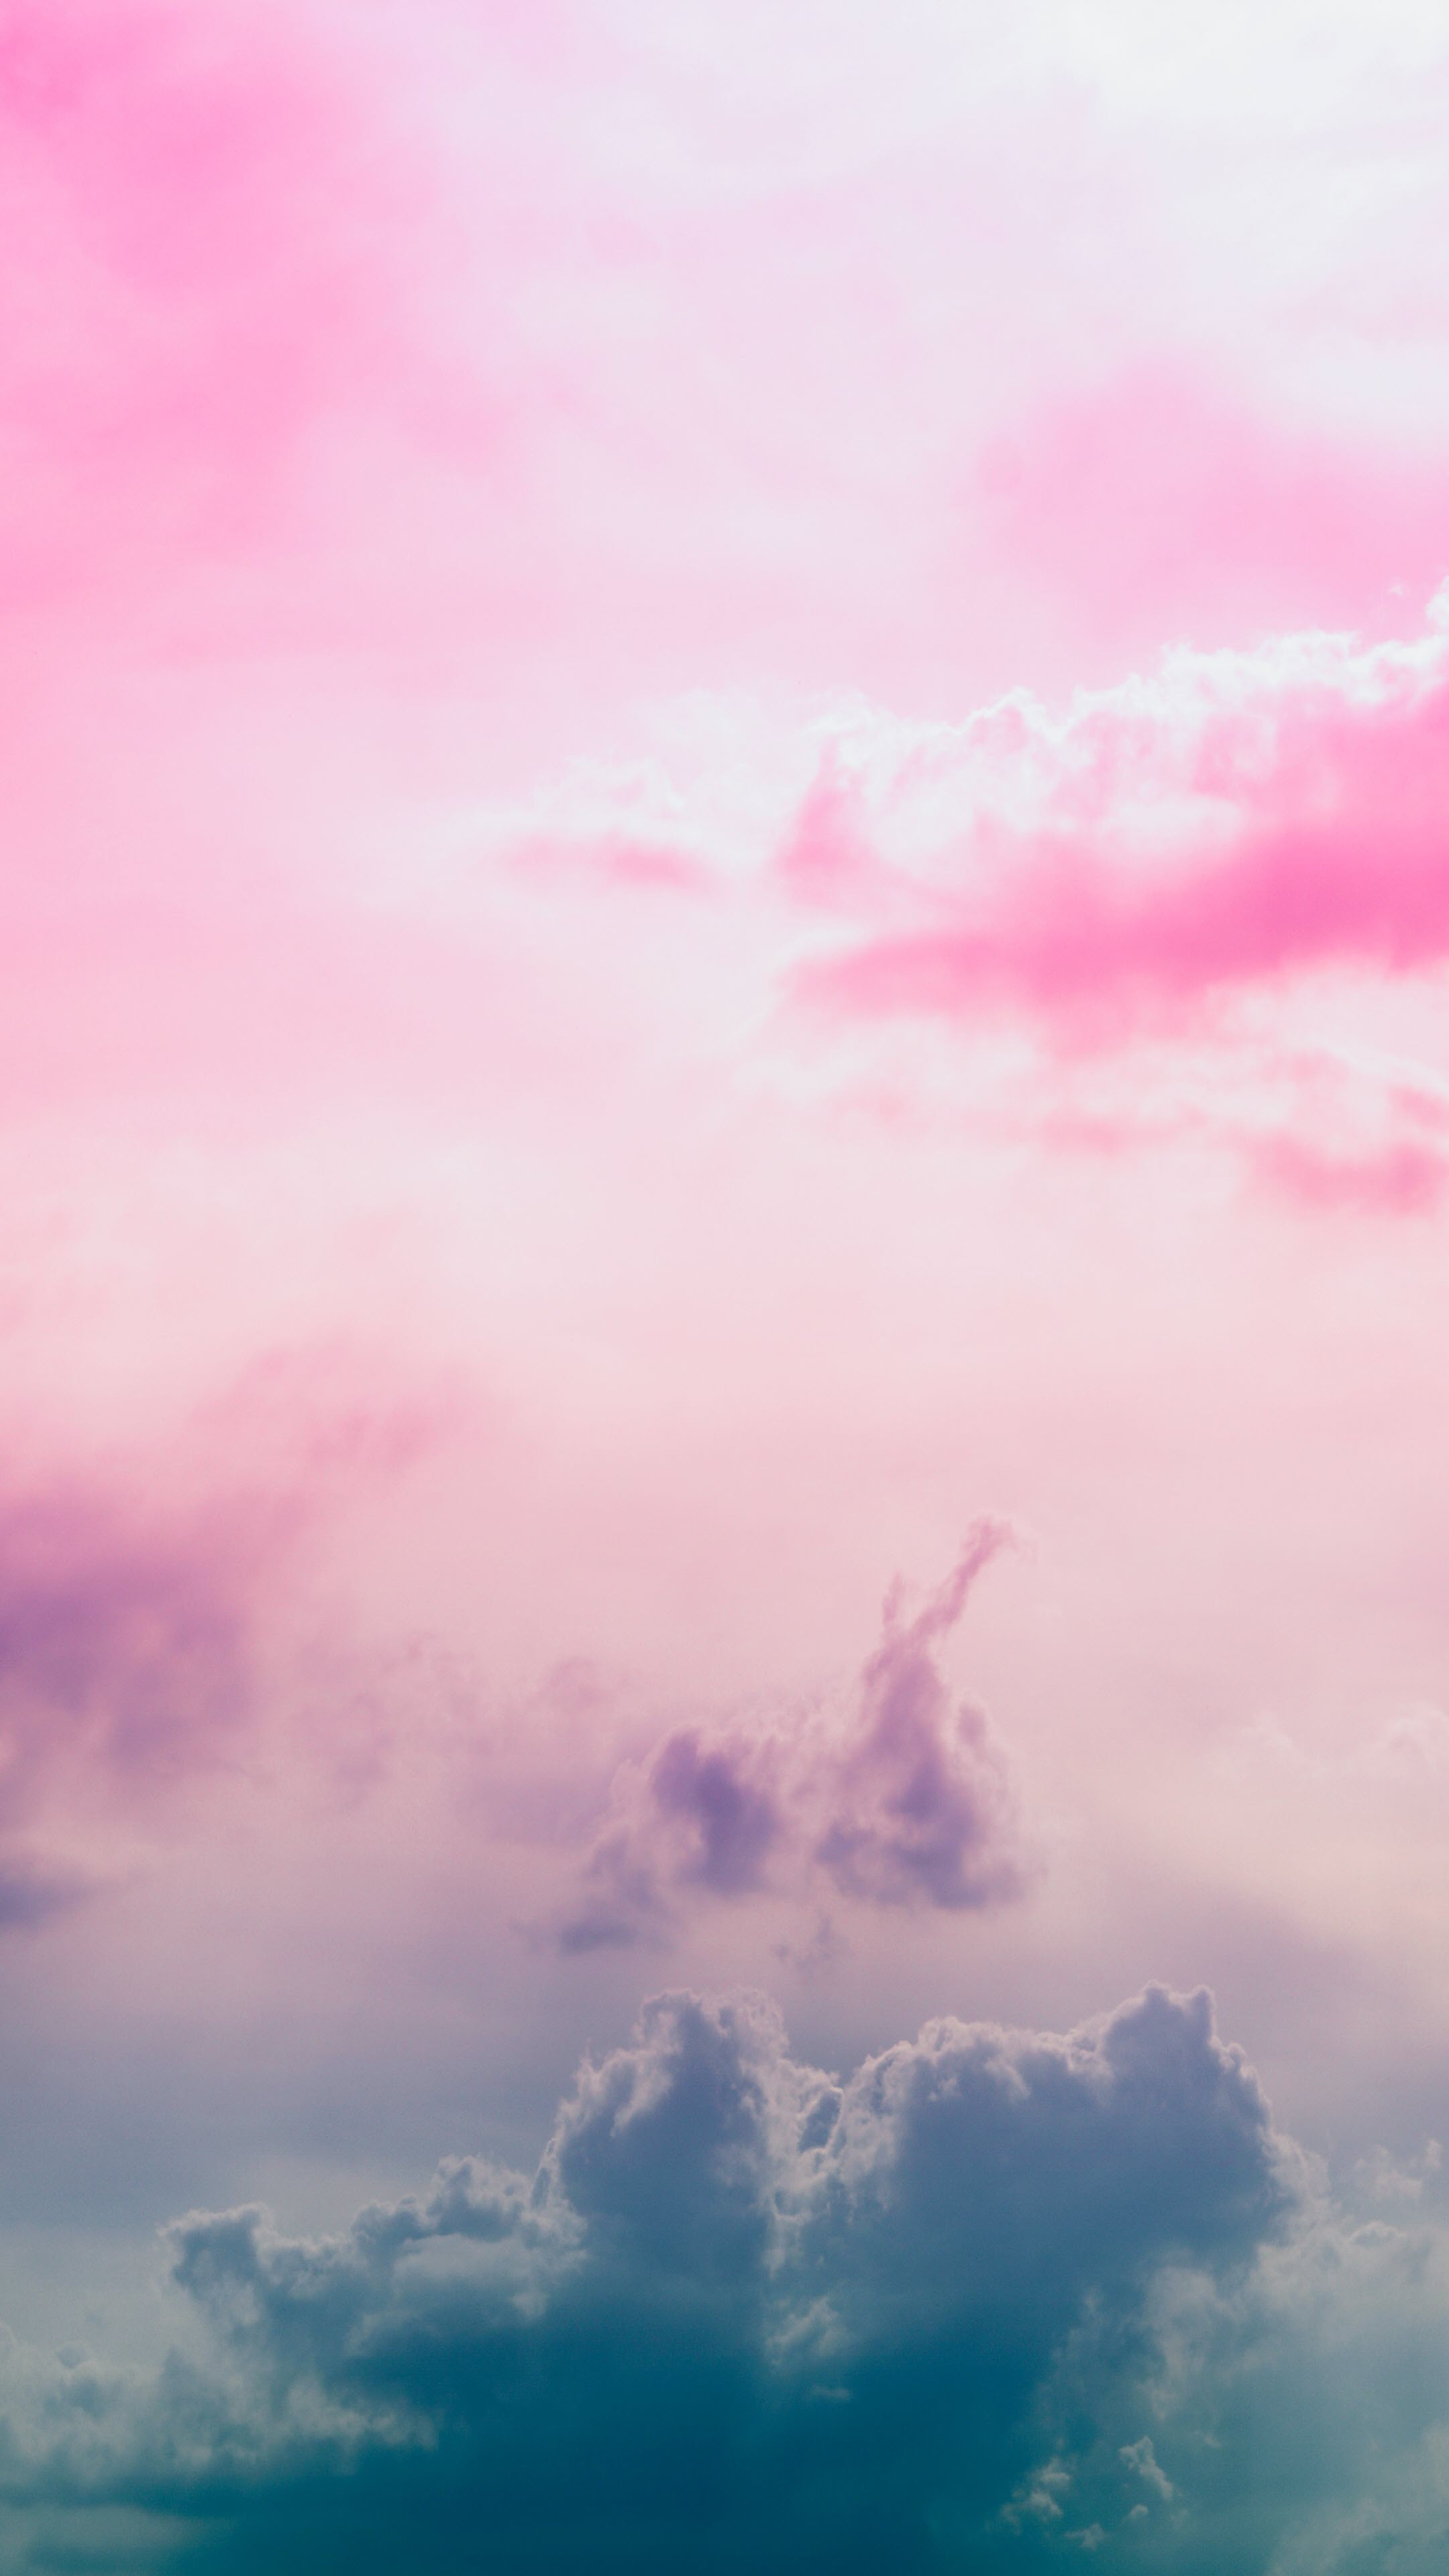 Chia sẻ nhiều hơn 106 bầu trời hình nền cute màu hồng tuyệt vời nhất   thdonghoadian